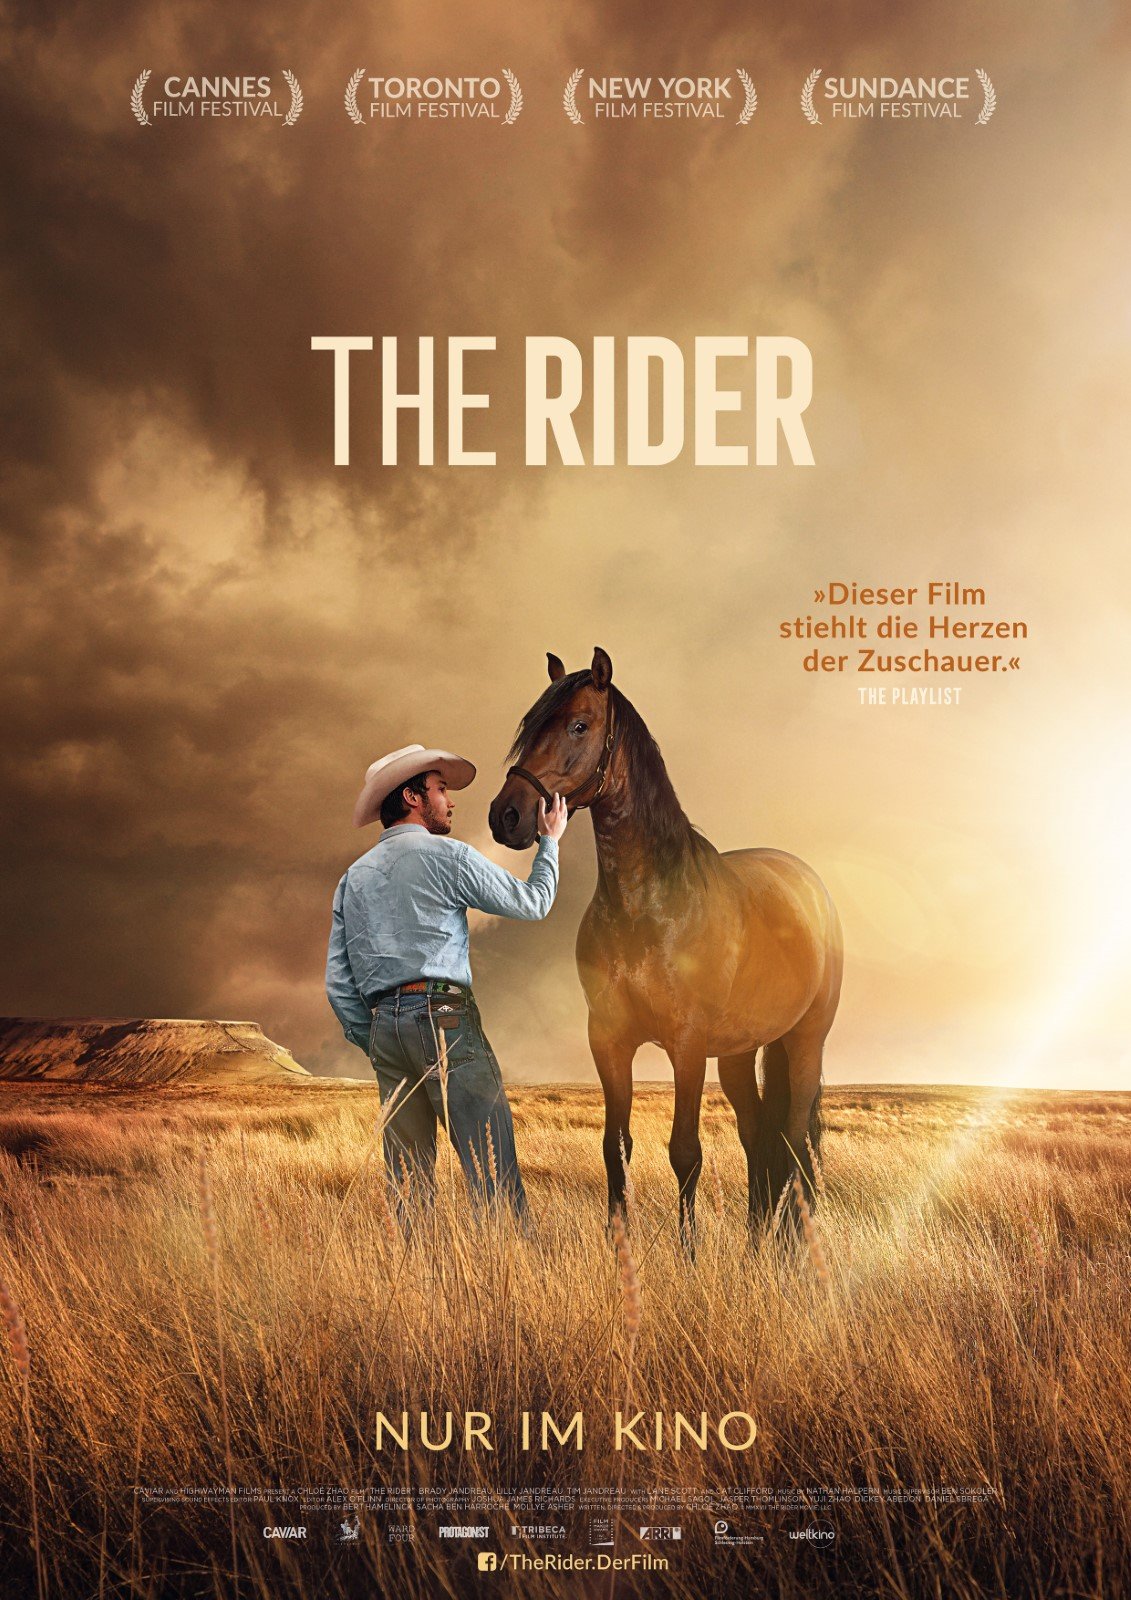 The Rider online schauen in HD als Stream & Download